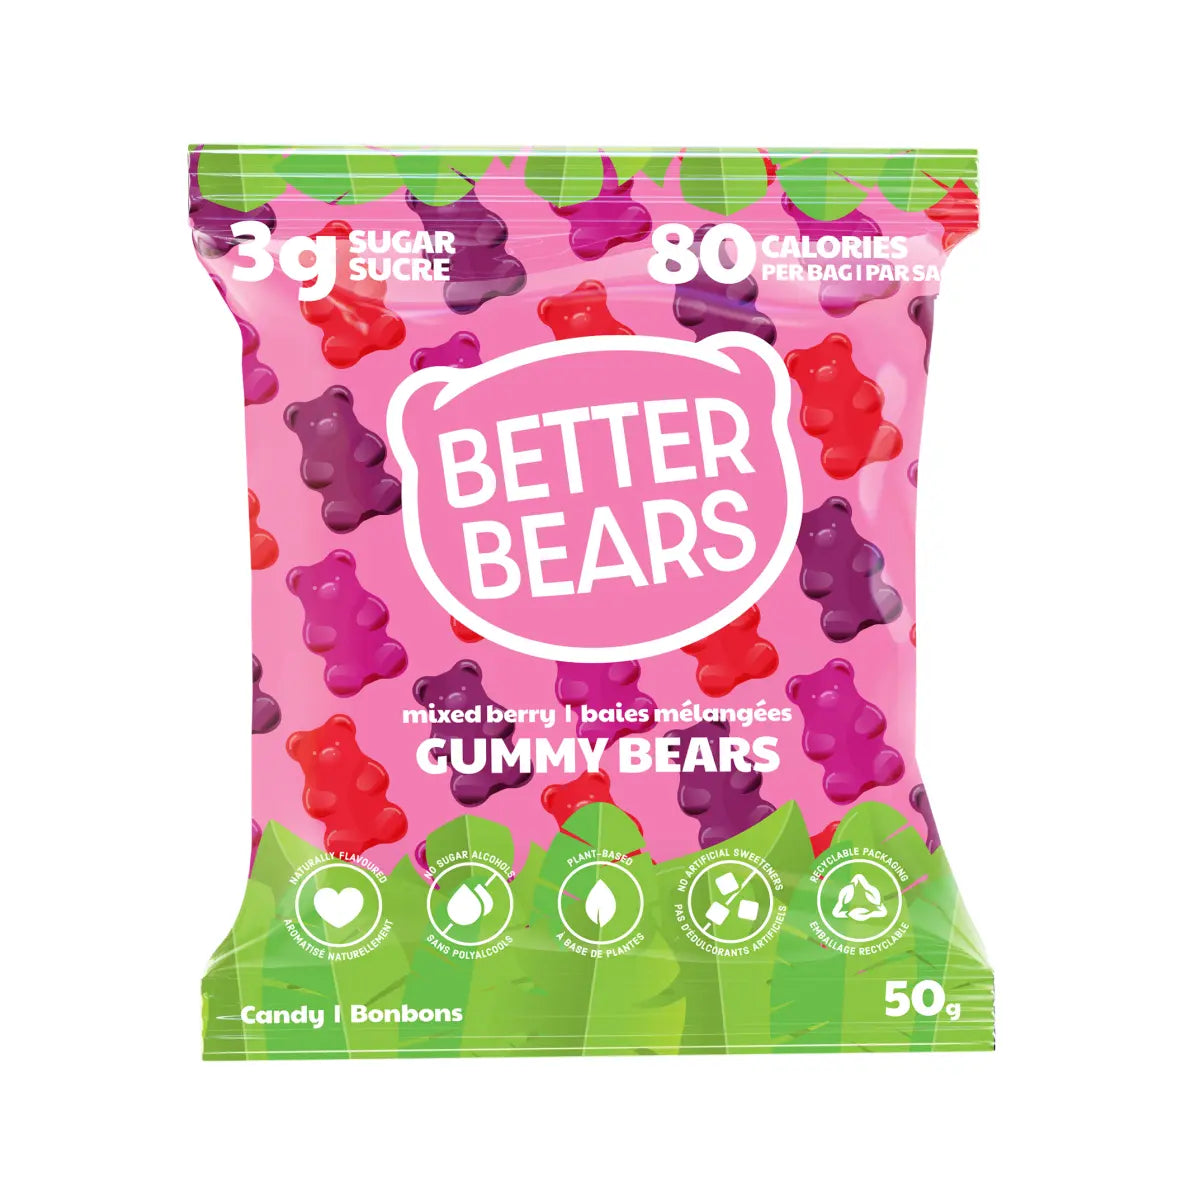 Better Bears Mixed Berry Gummy Bears 50g